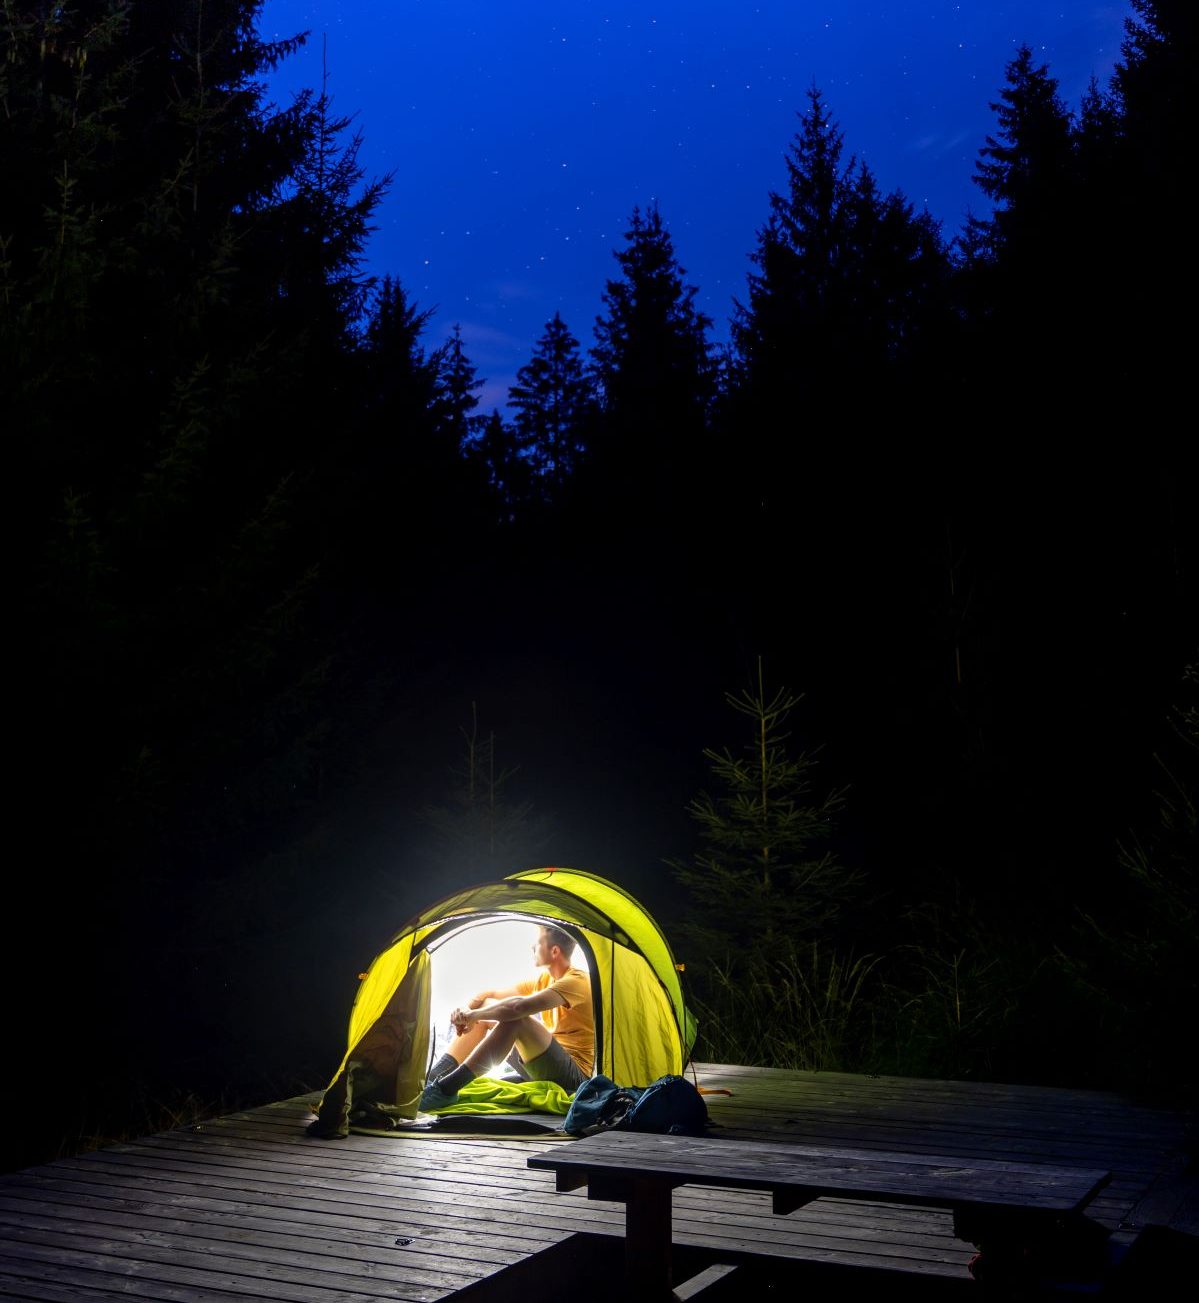 Un homme en chemise jaune est assis dans une petite tente sur une plate-forme en bois, la nuit. La tente est éclairée et lumineuse, mais le ciel et les bois environnants sont sombres.